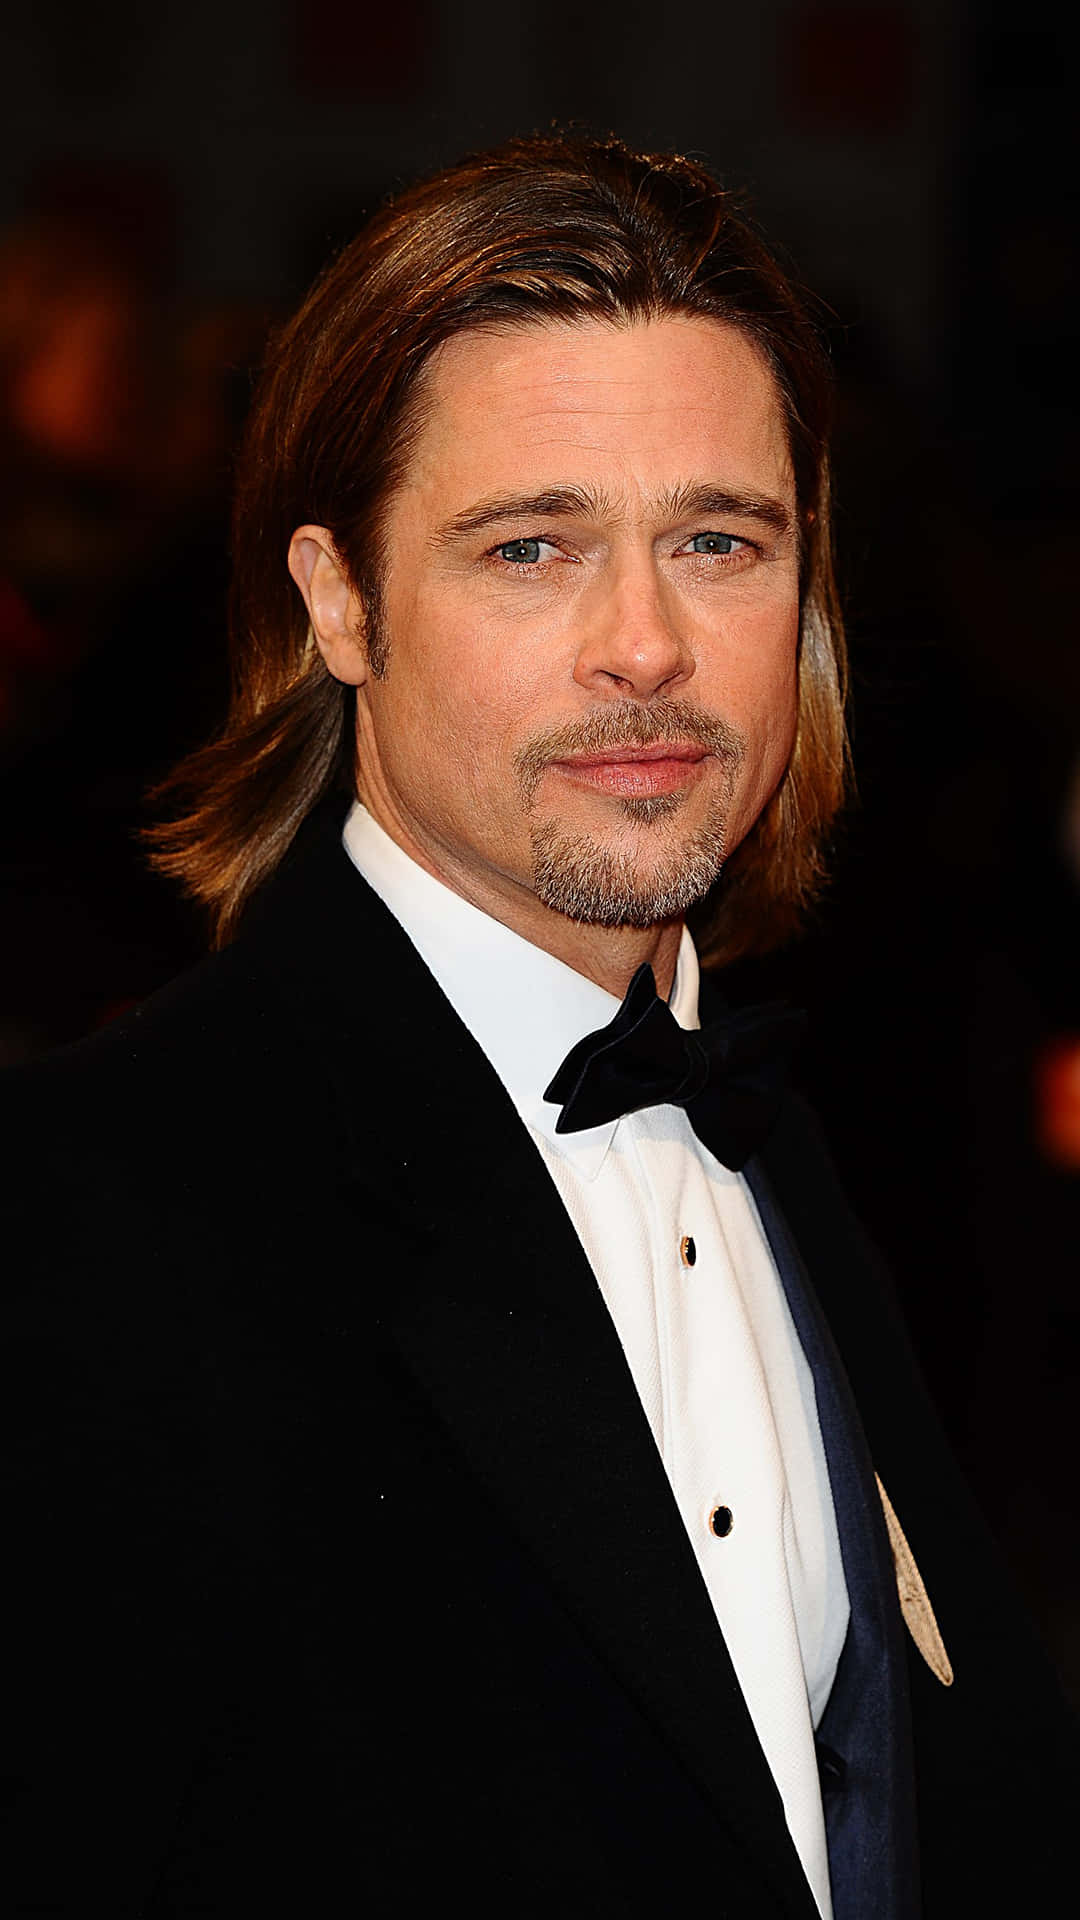 Laestrella De Hollywood Brad Pitt En Su Pose Clásica.